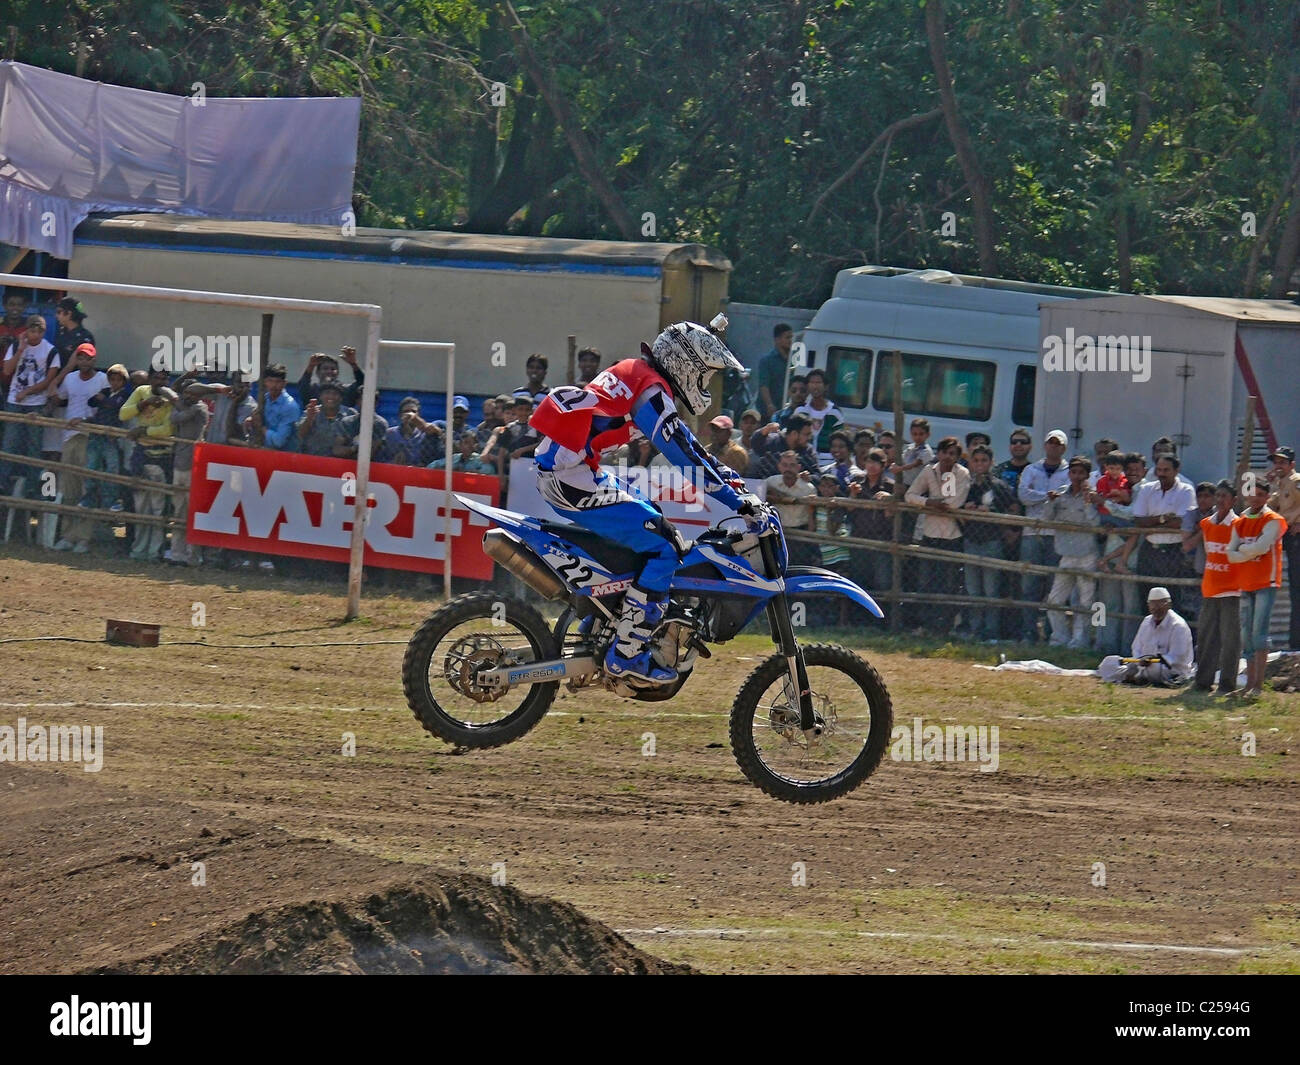 Rider Motocross effectuant un saut sur une moto, Pune, Maharashtra, Inde Banque D'Images